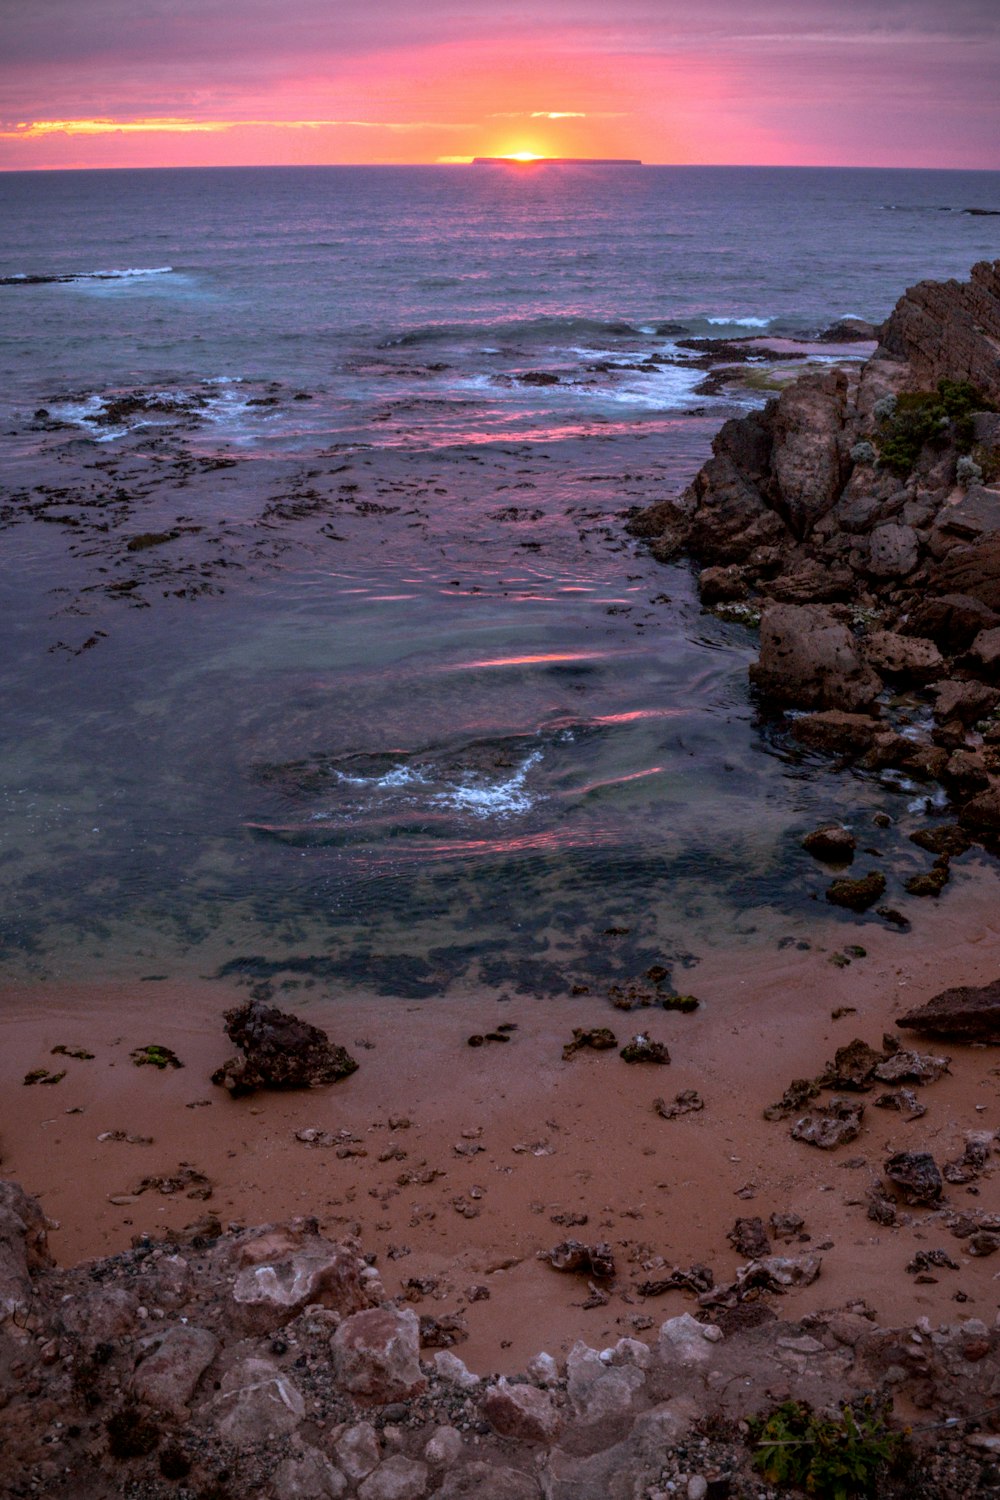 water smashing rocks on seashore during sunset